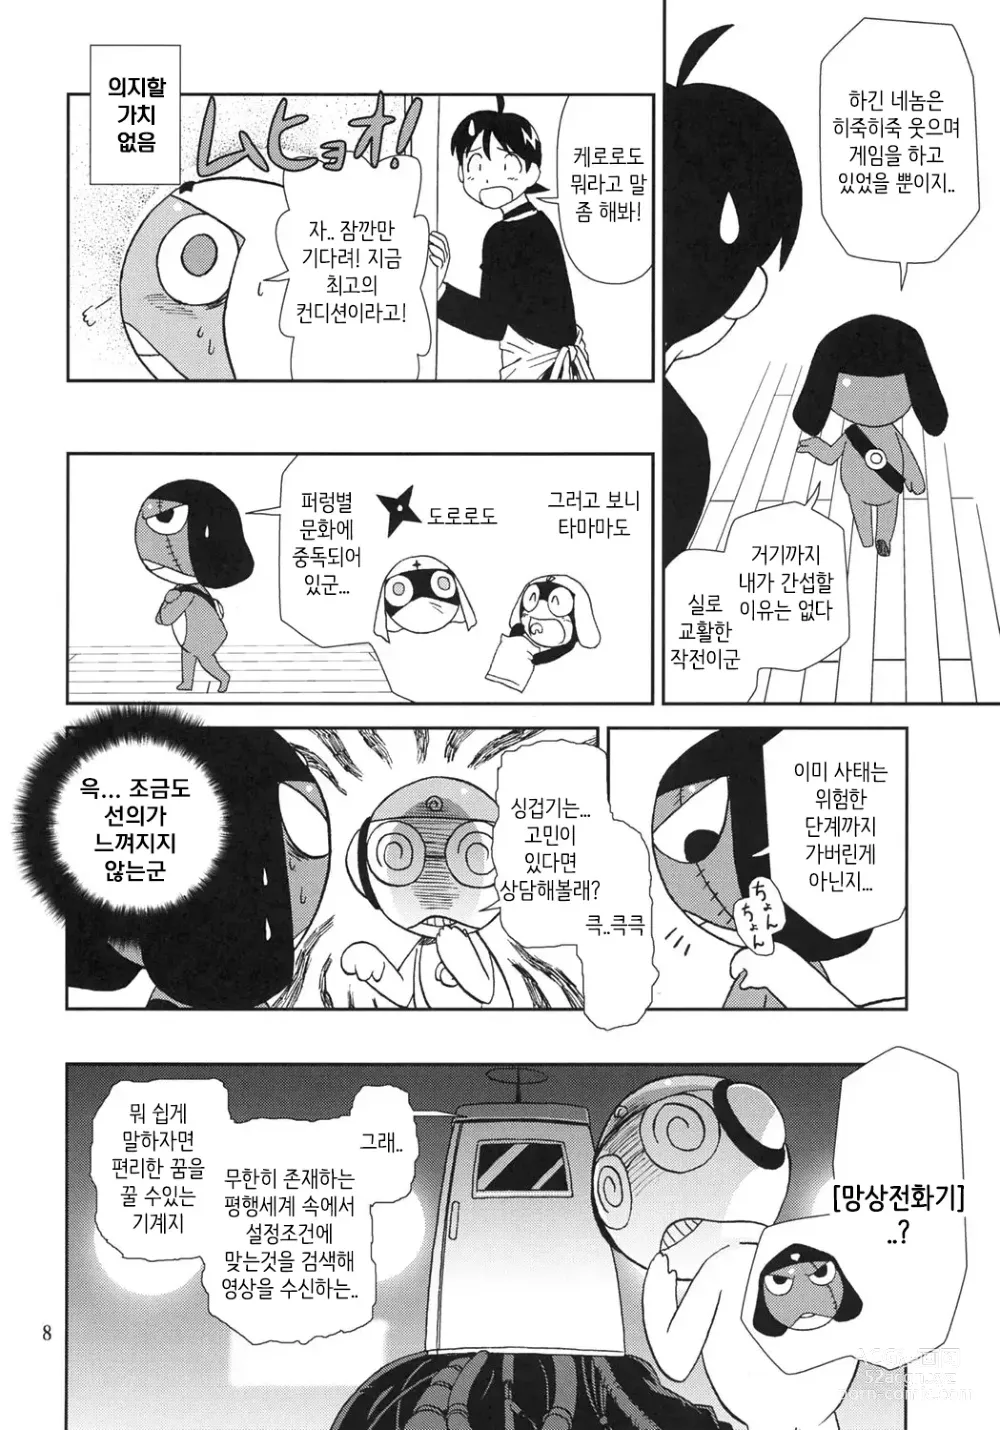 Page 7 of doujinshi 마음이 문제